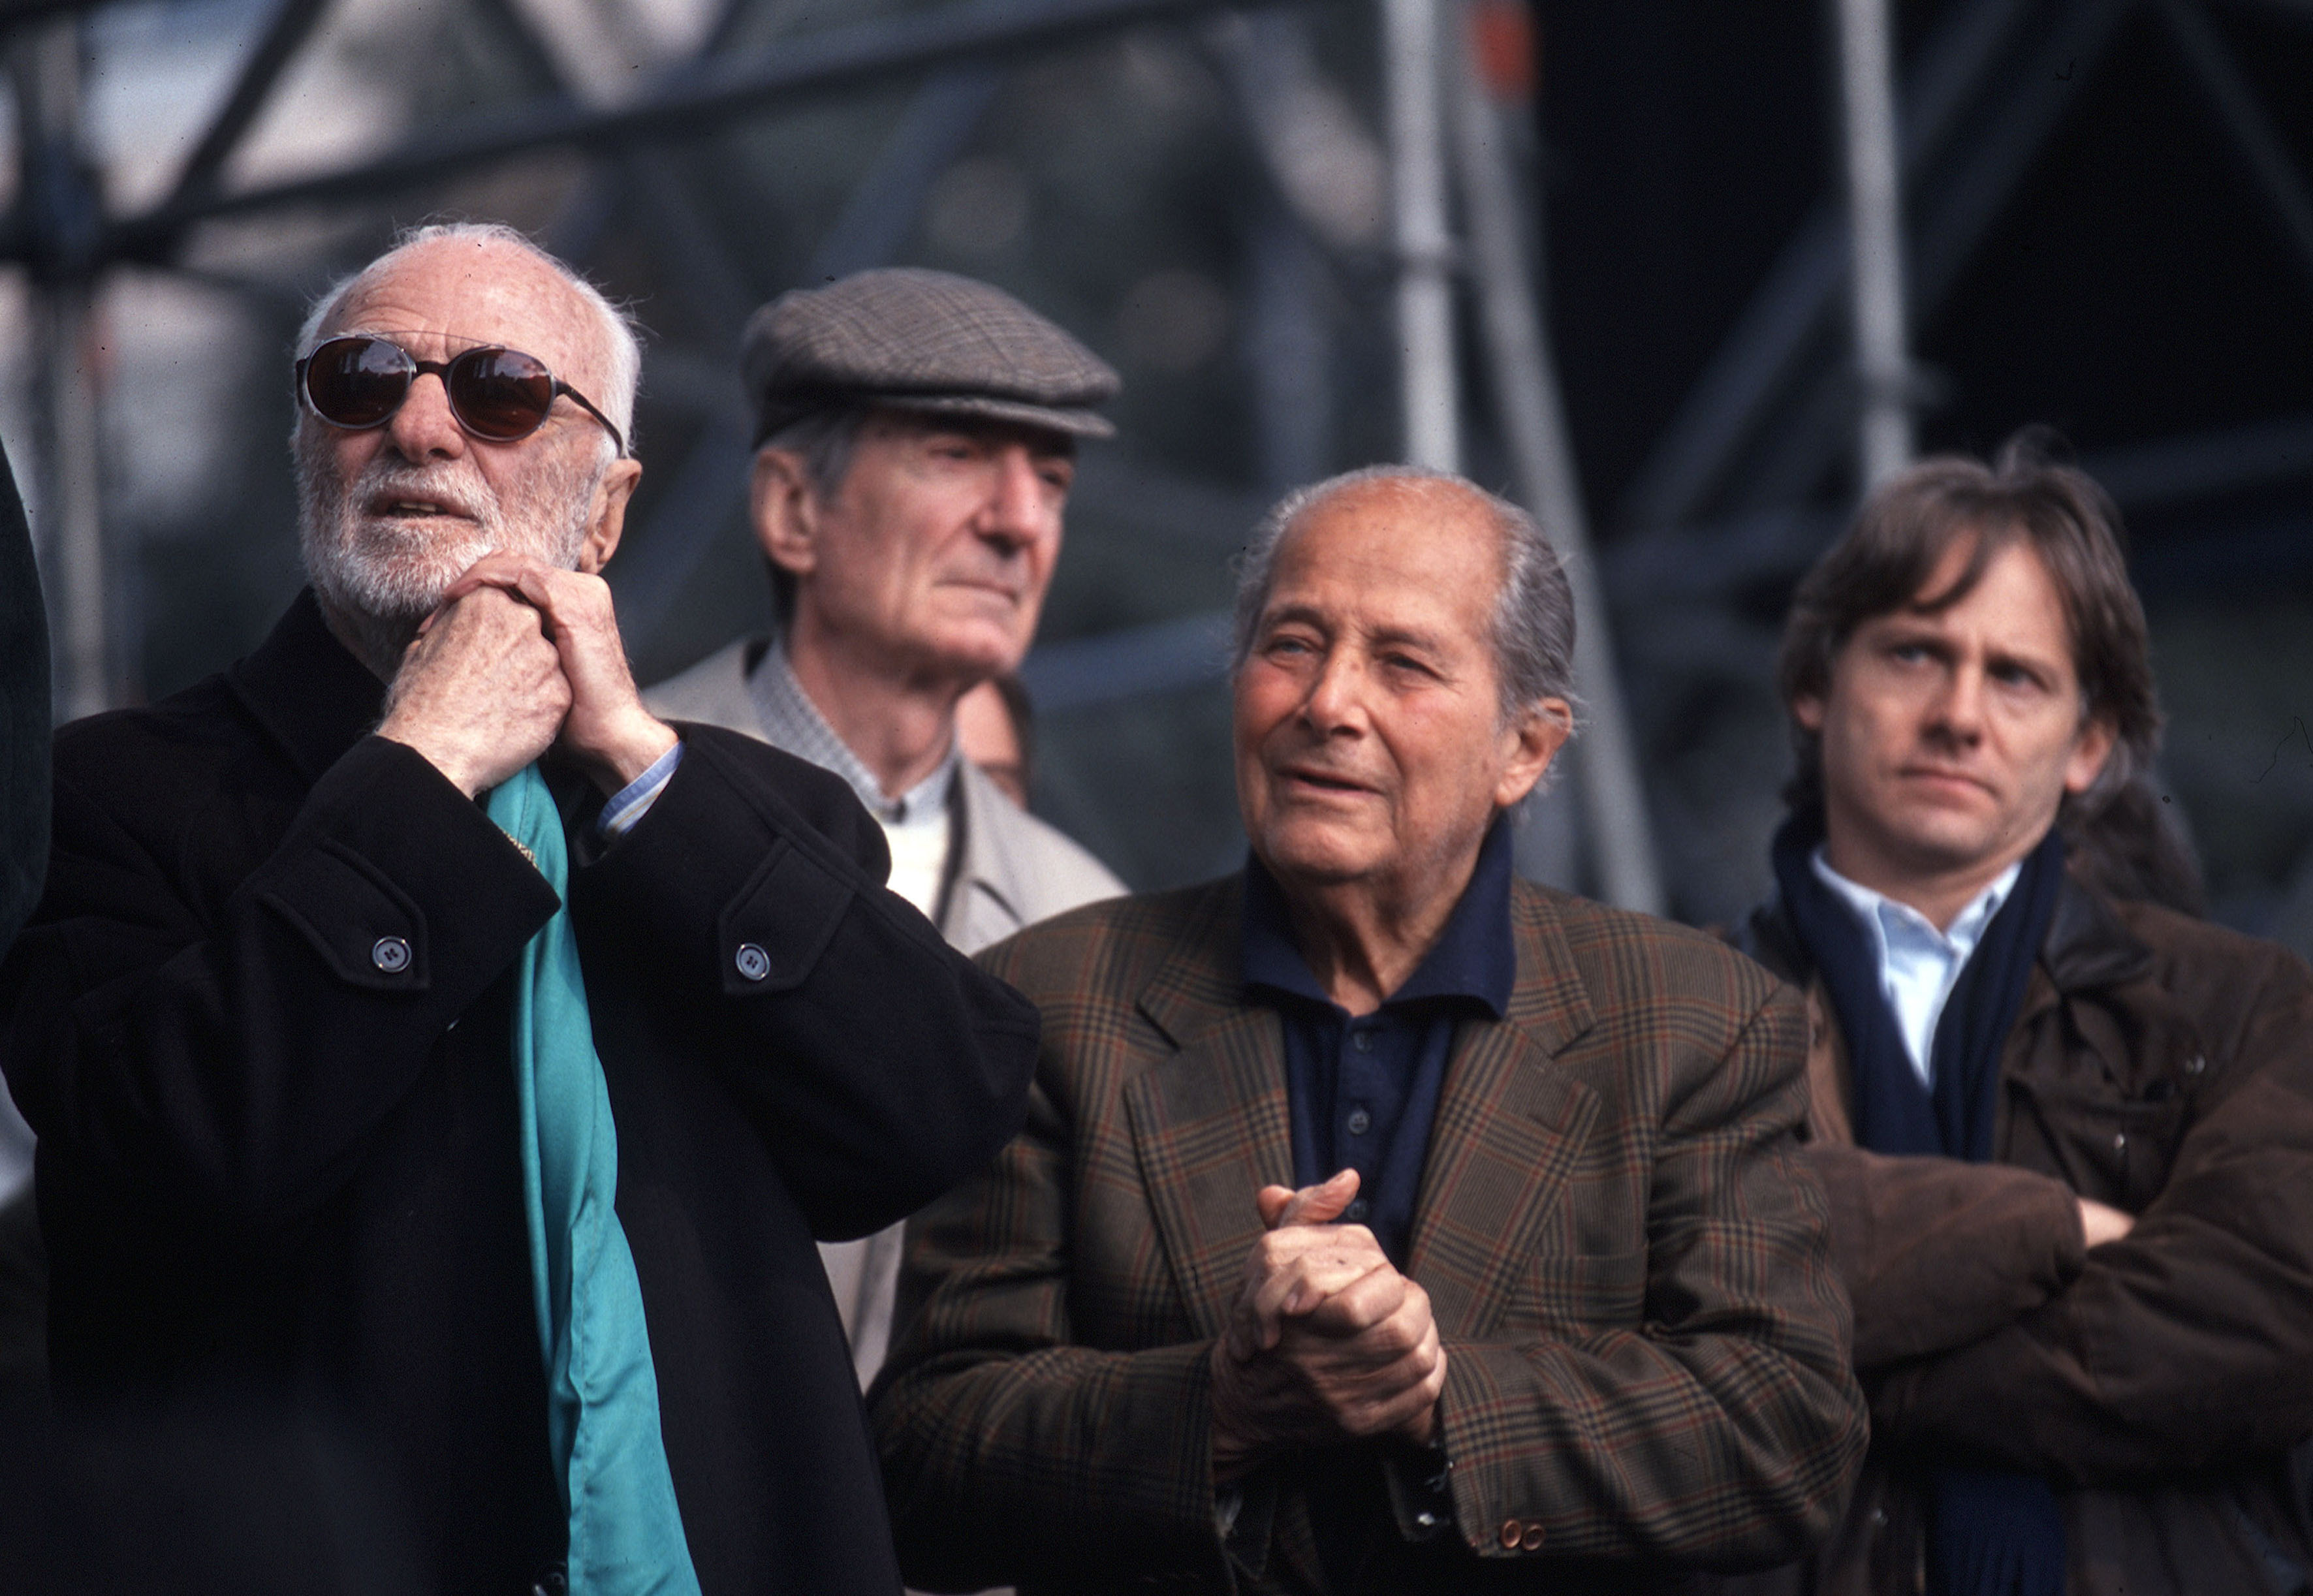 Da sinistra: Monicelli, Lizzani, Pontecorvo e l'attore Giulio Scarpati. 2001